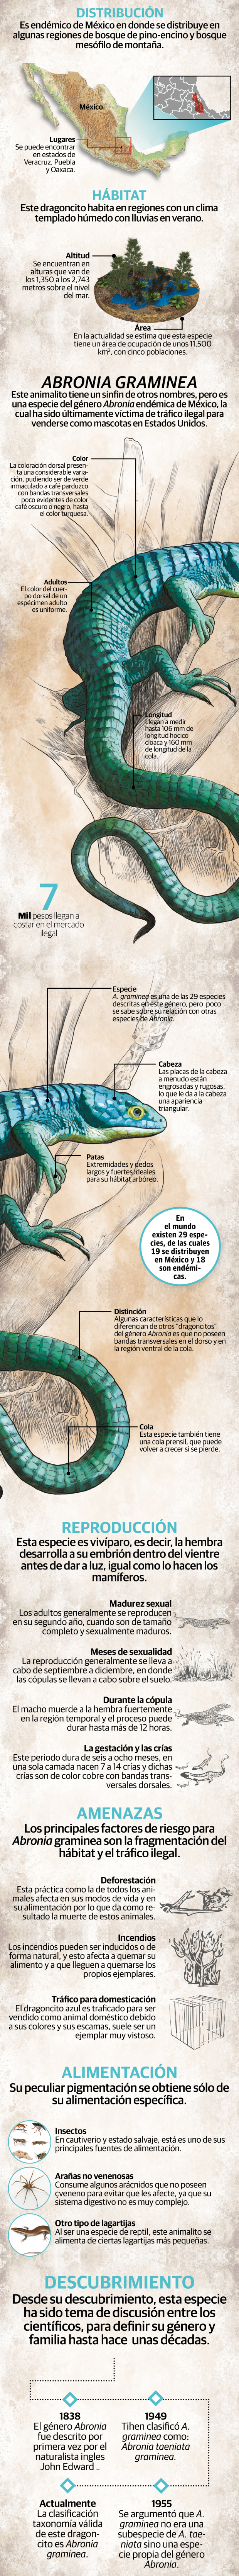 Perseguido por su belleza: el dragoncito azul mexicano está en riesgo de extinción